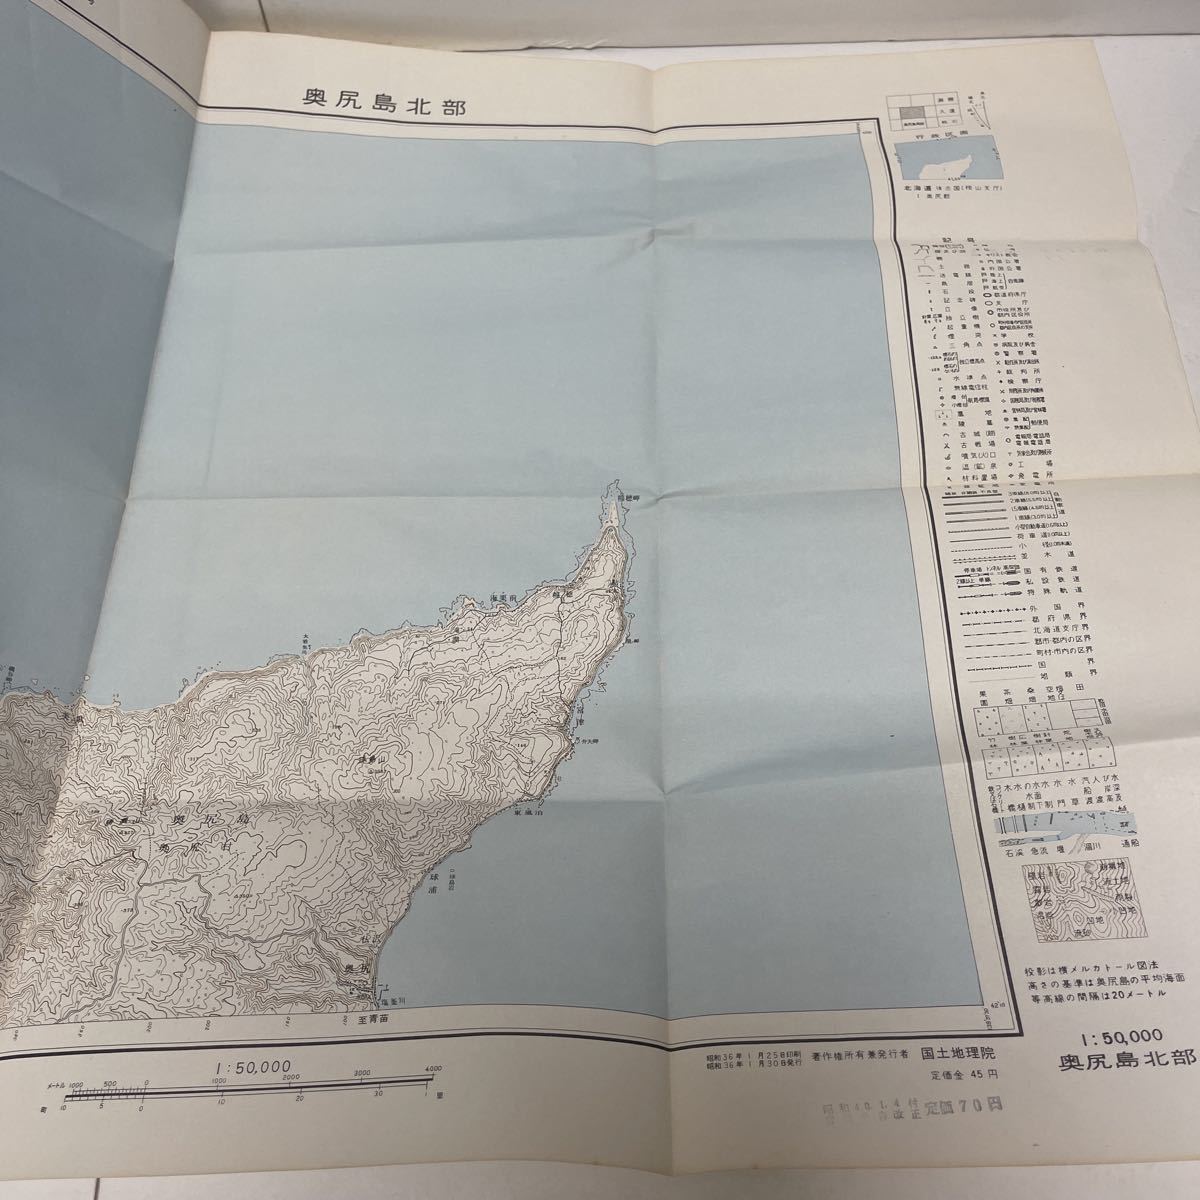 古地図 地形図 五万分之一 国土地理院 昭和32年測量 昭和36年発行 奥尻島北部 北海道_画像2